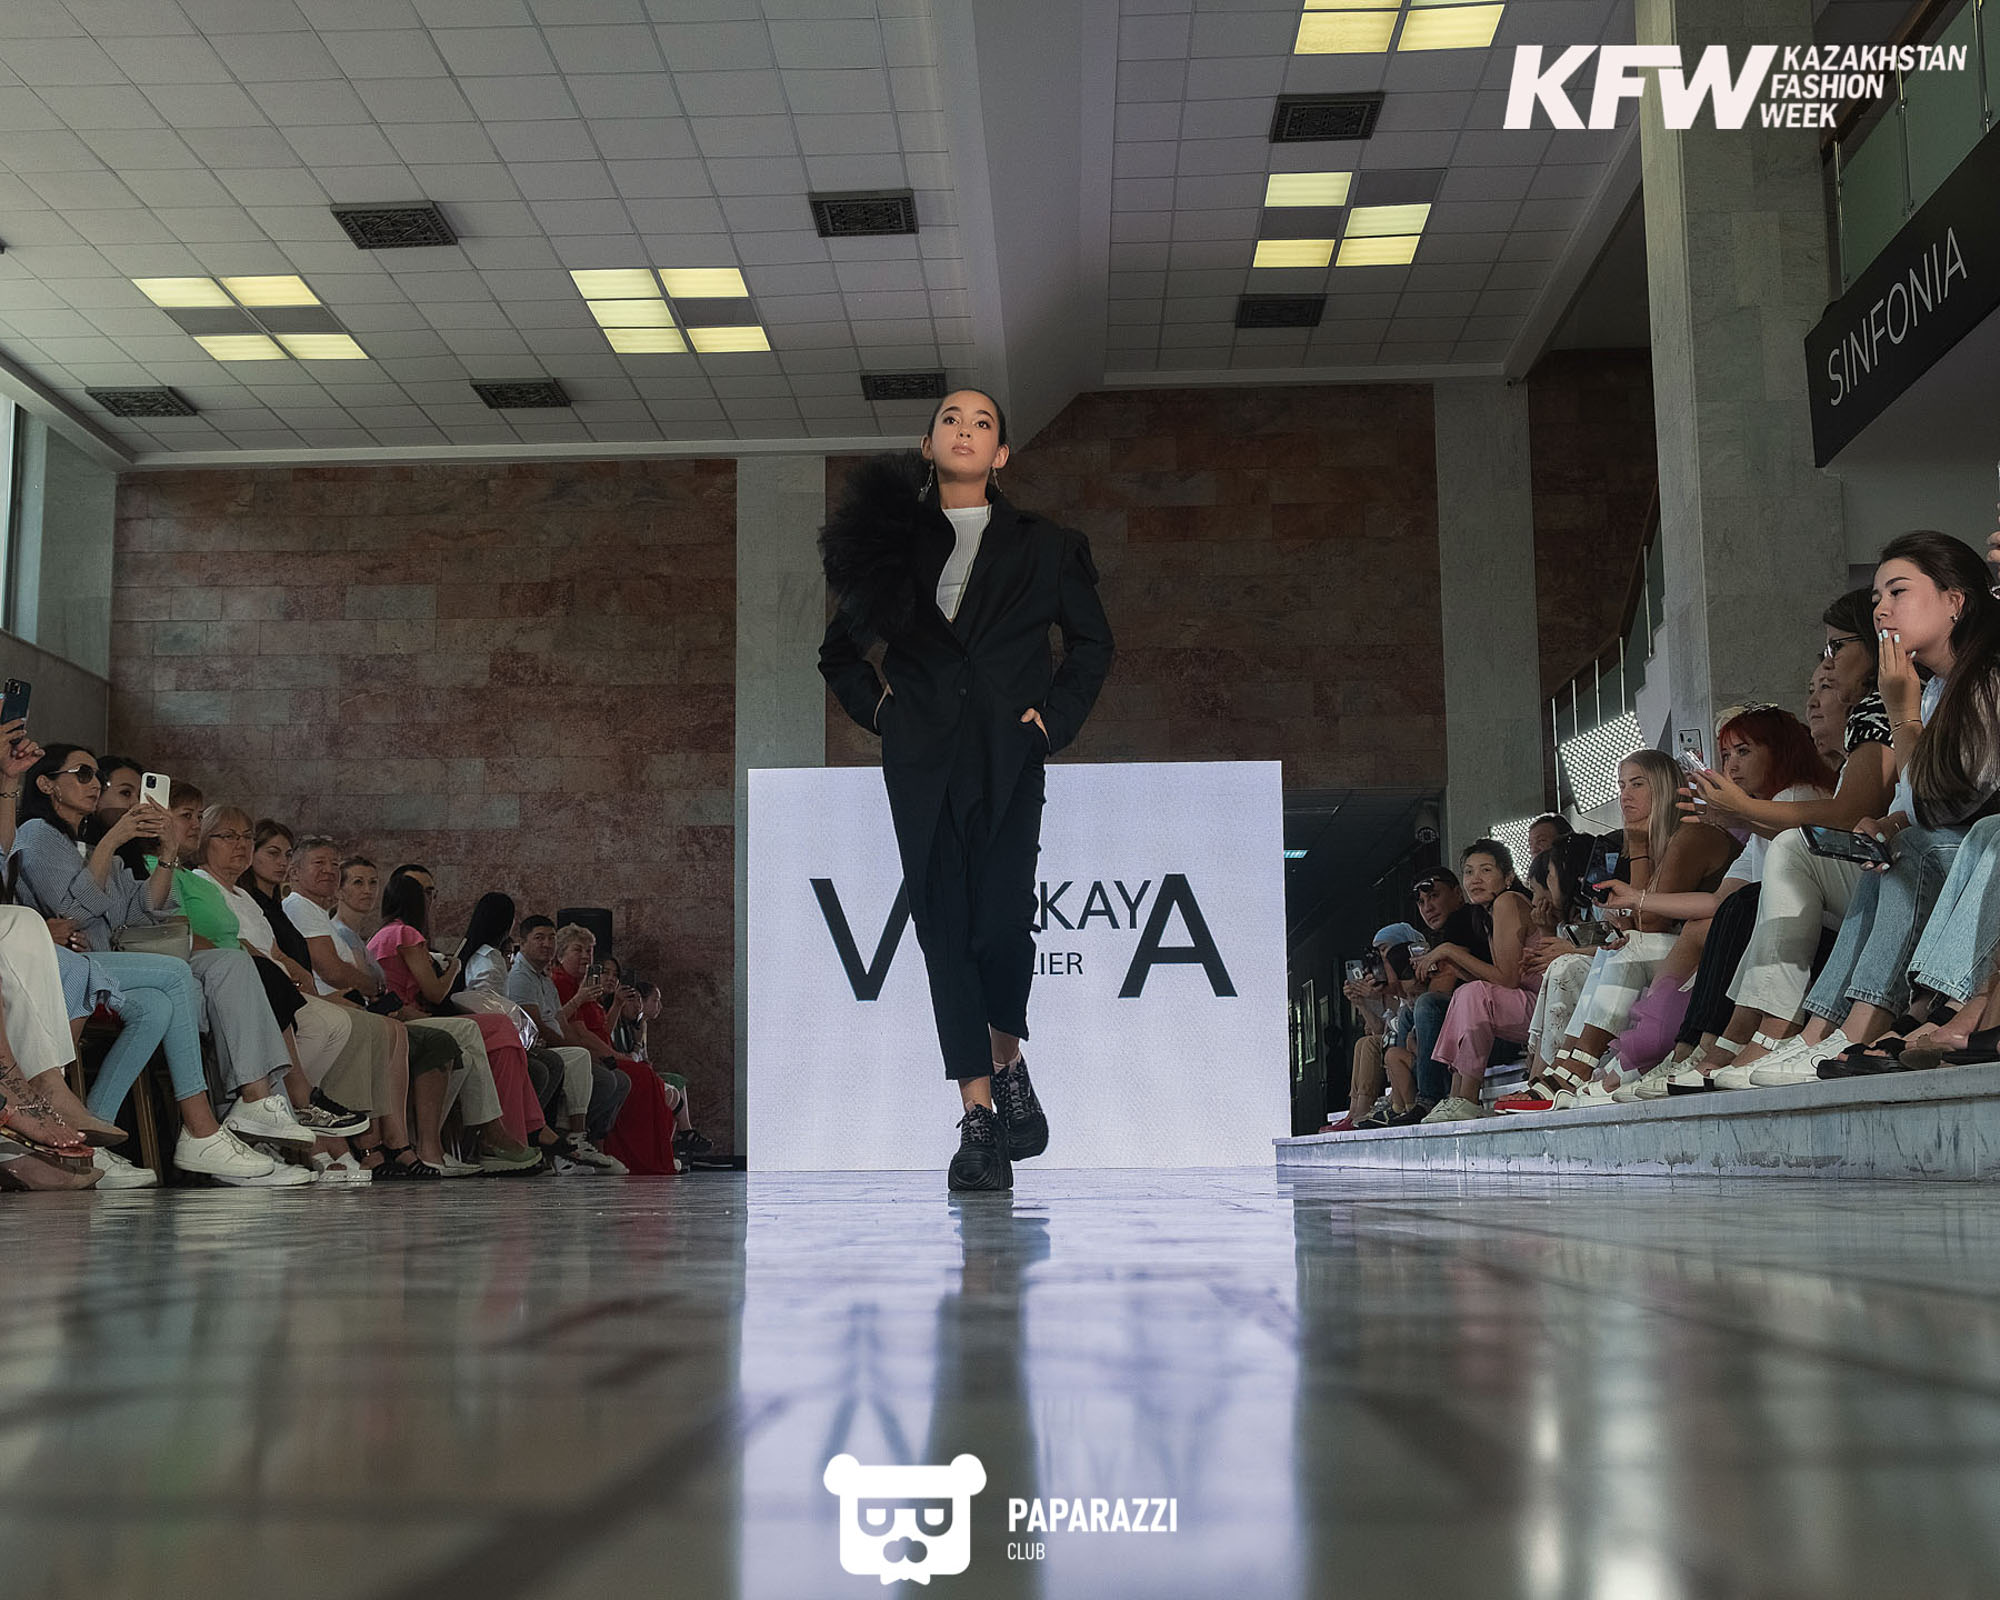 Показ "Мода за счастье детей" при поддержке Национальной Недели моды KAZAKHSTAN FASHION WEEK